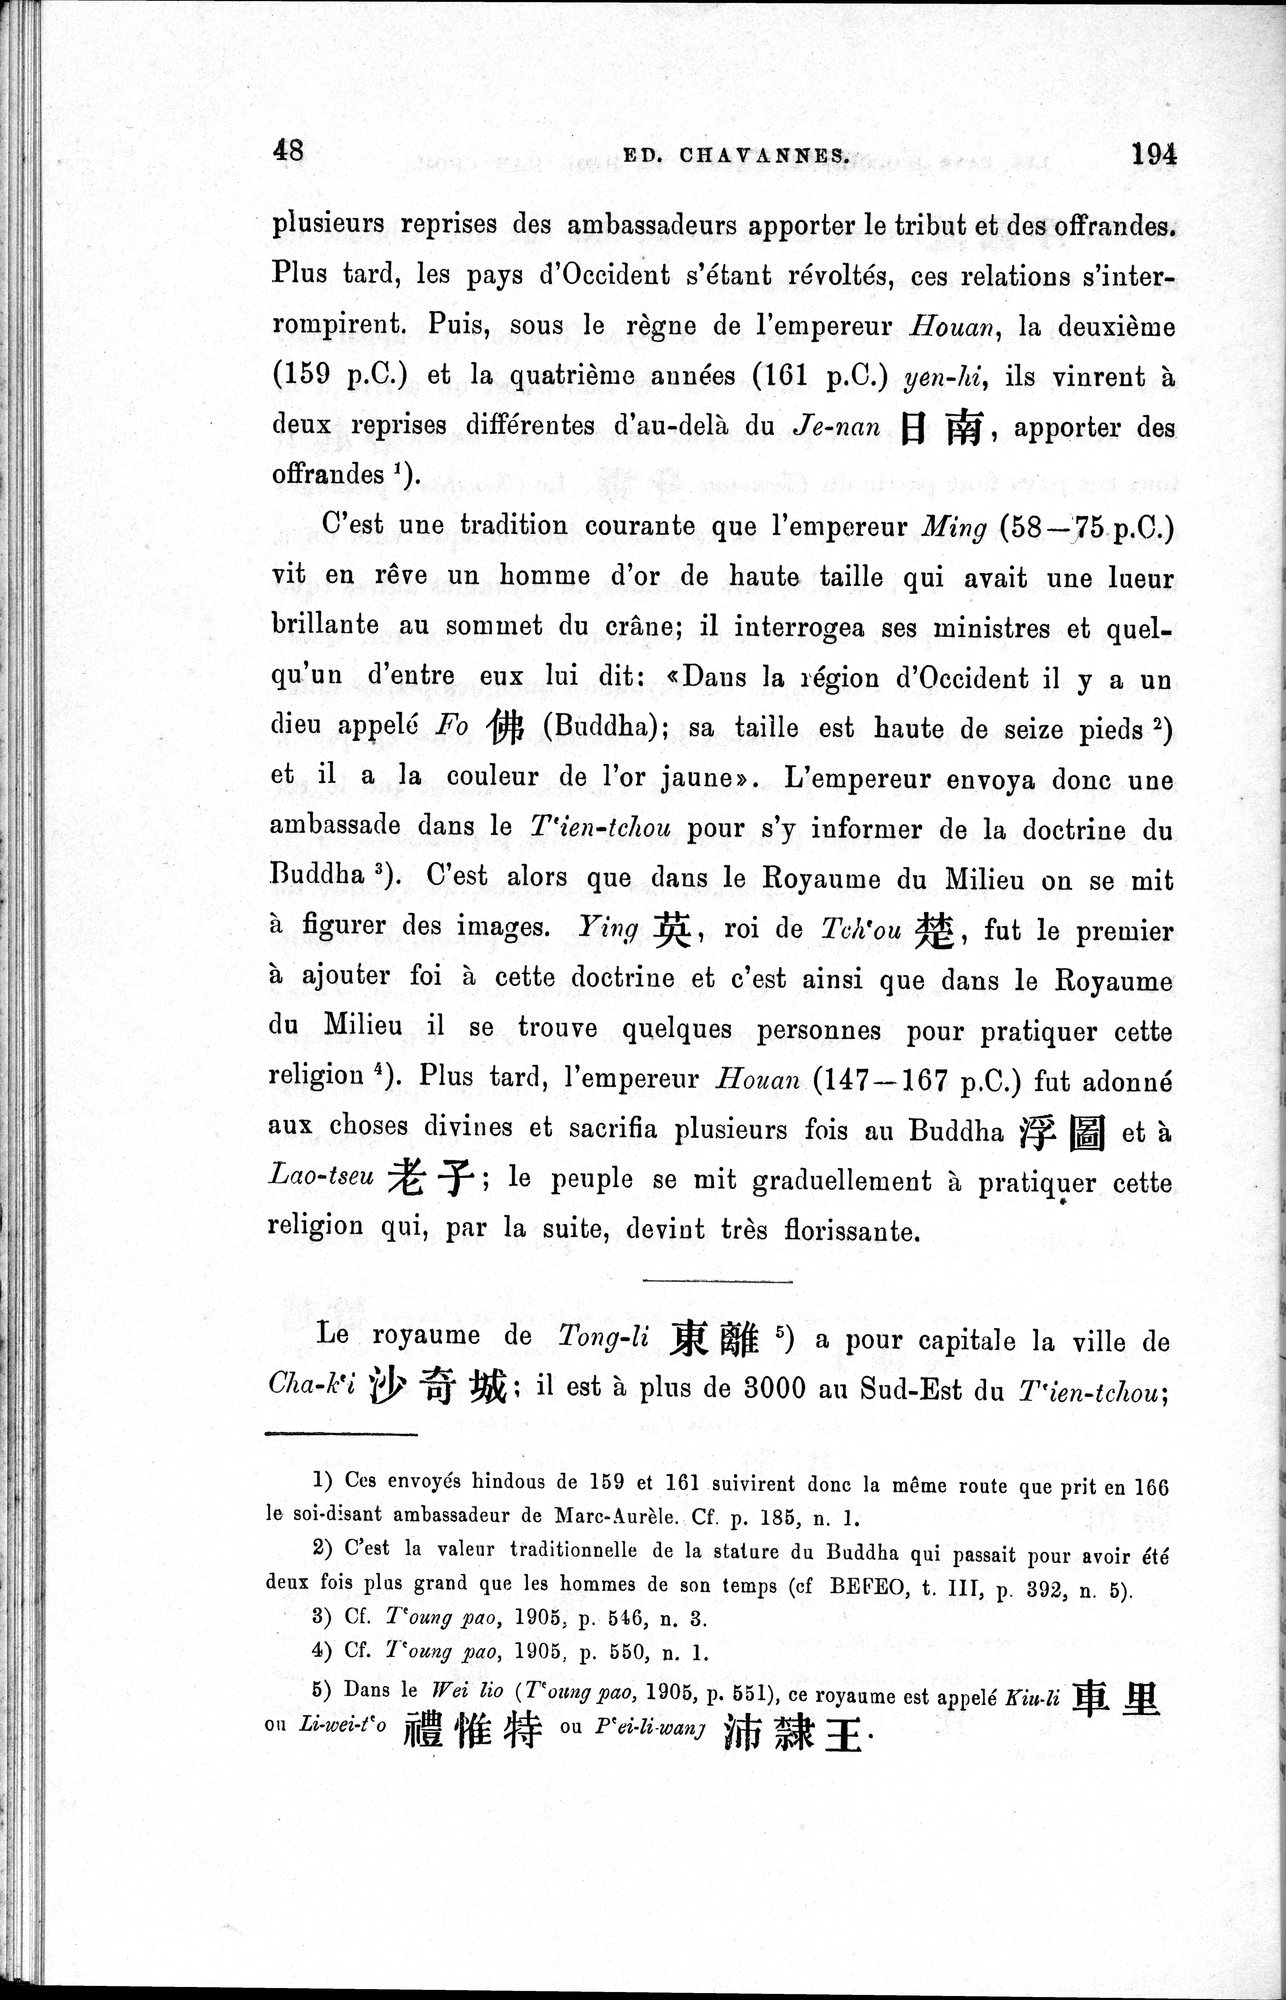 Les pays d'Occident d'après le Heou Han Chou : vol.1 / Page 56 (Grayscale High Resolution Image)